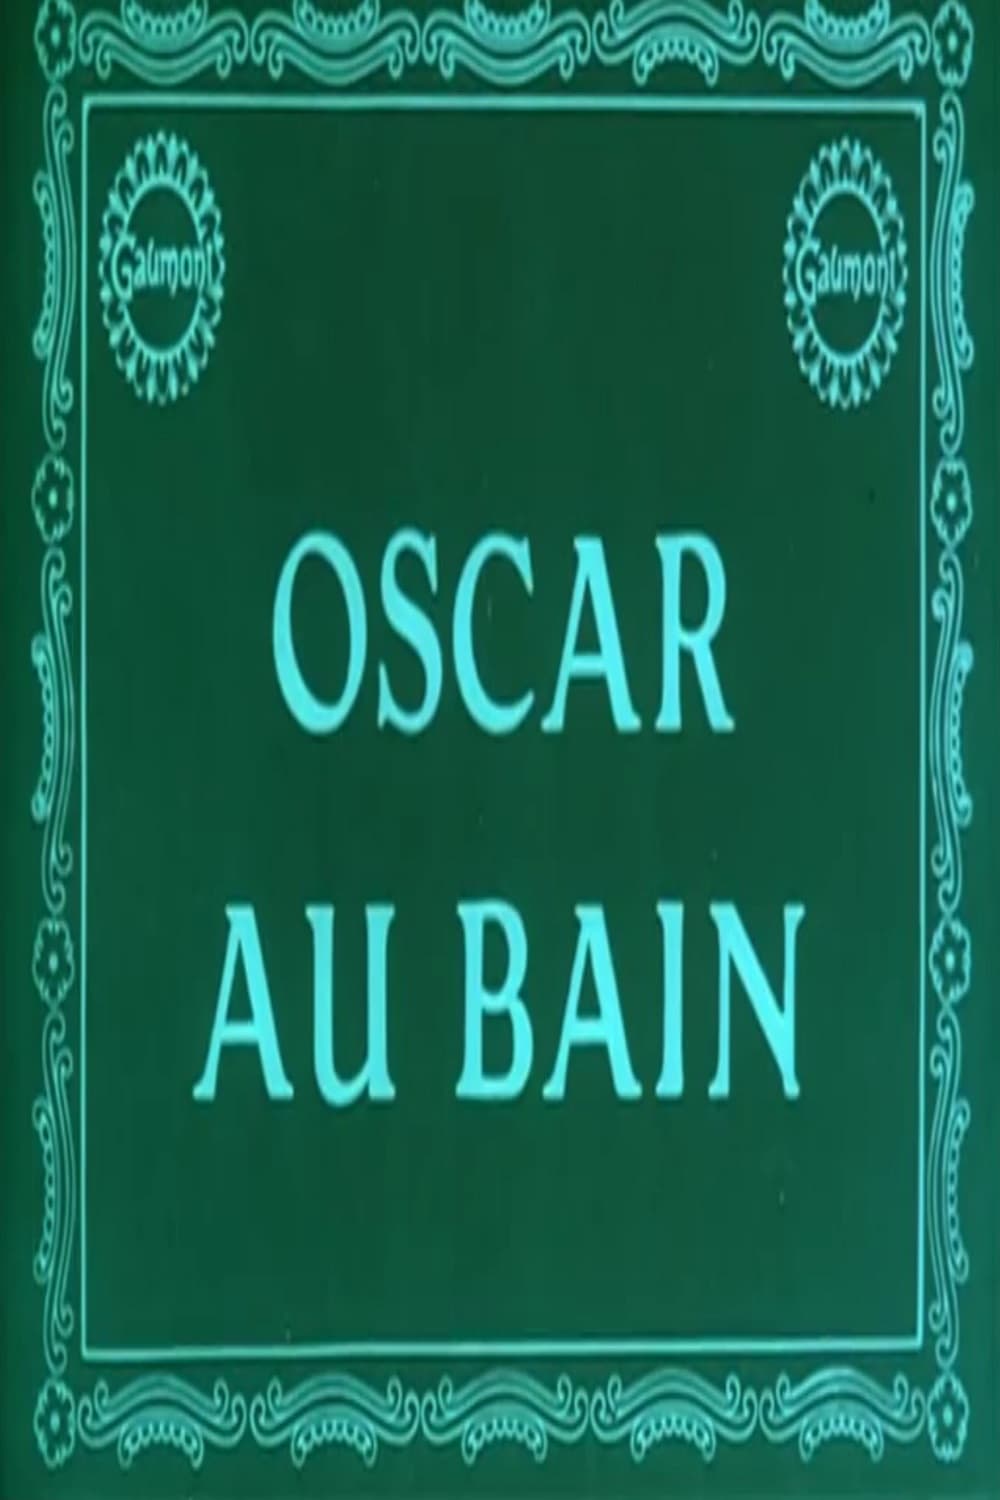 Oscar at the Bath